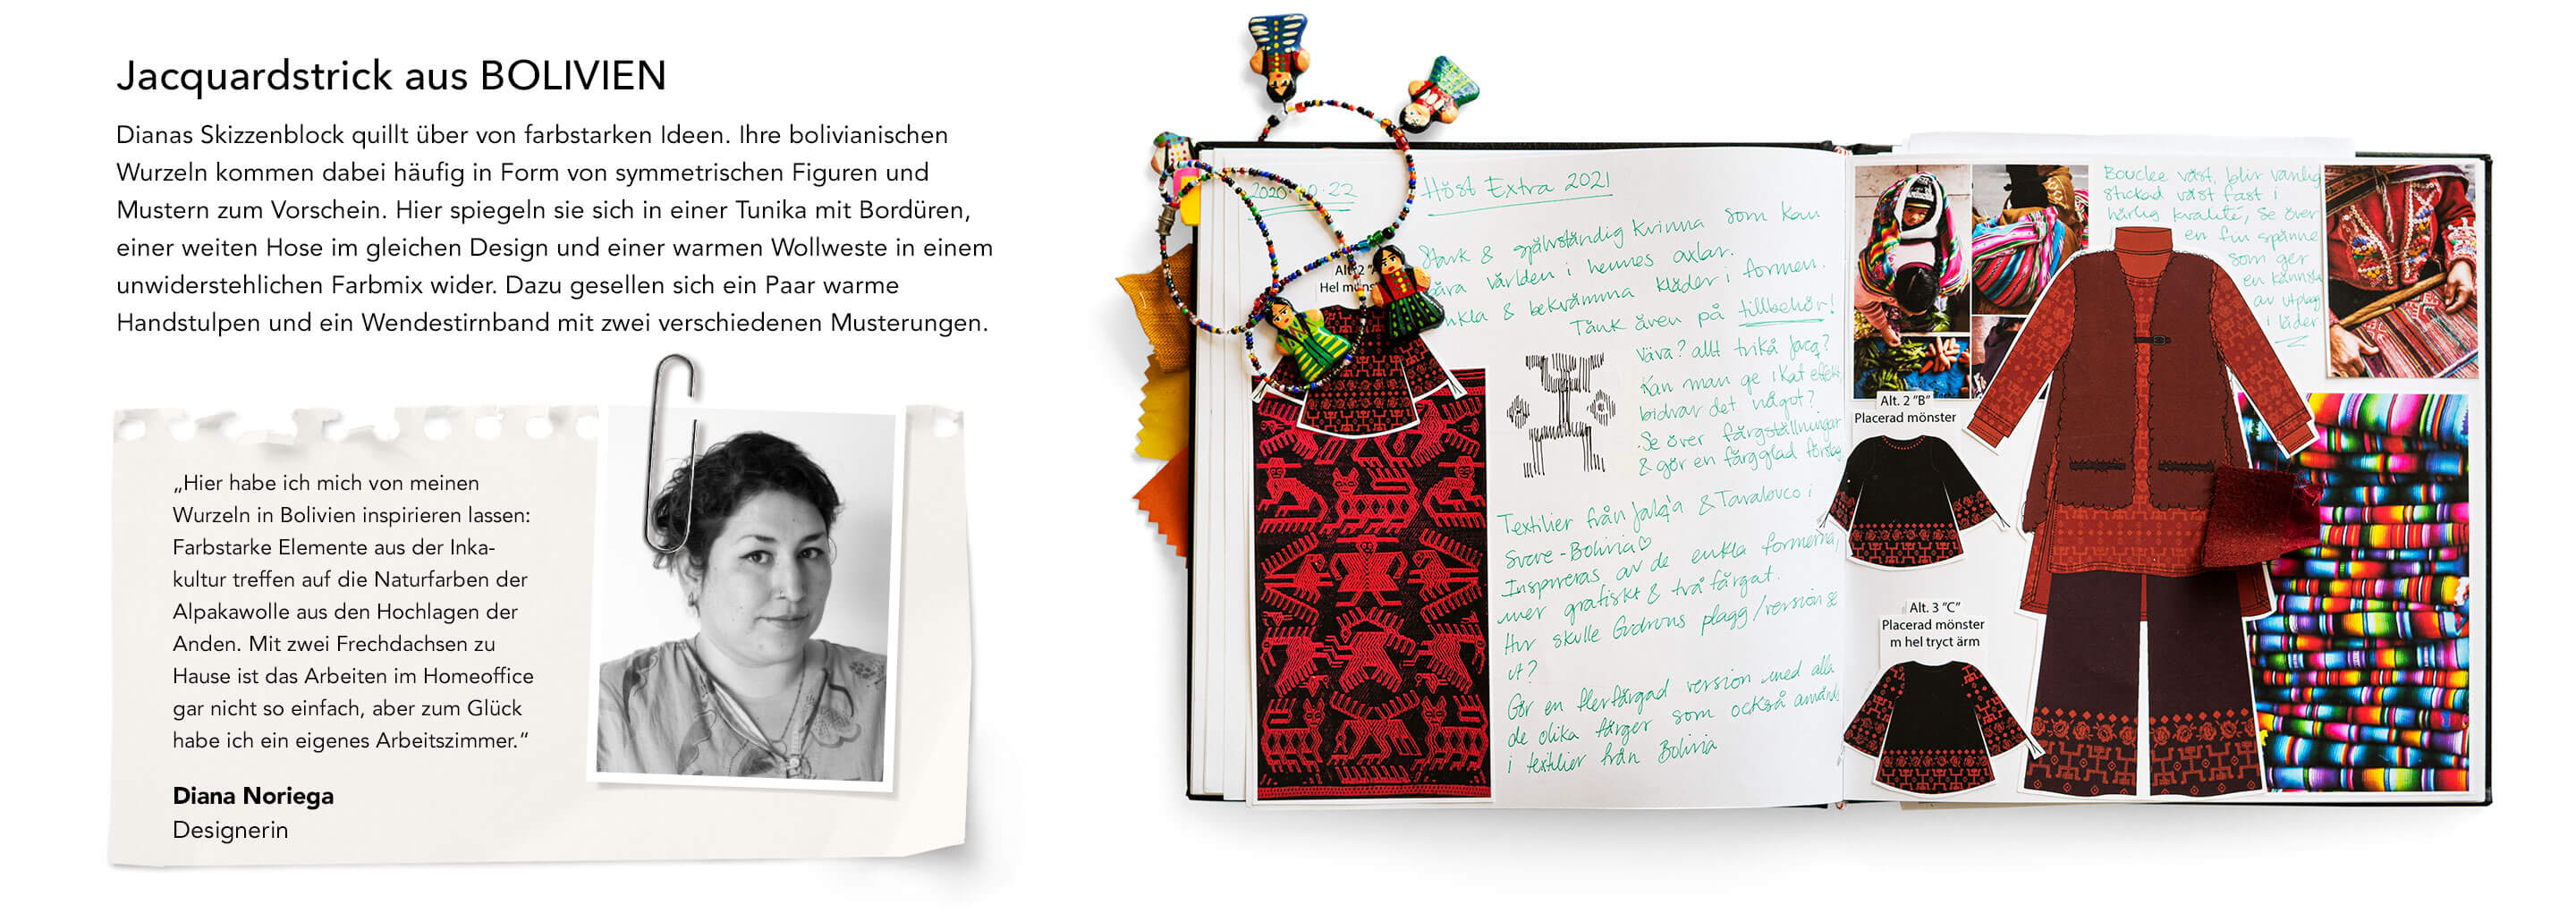 Dianas Skizzenblock quillt über von farbstarken Ideen. Ihre bolivianischen Wurzeln kommen dabei häufig in Form von symmetrischen Figuren und Mustern zum Vorschein.